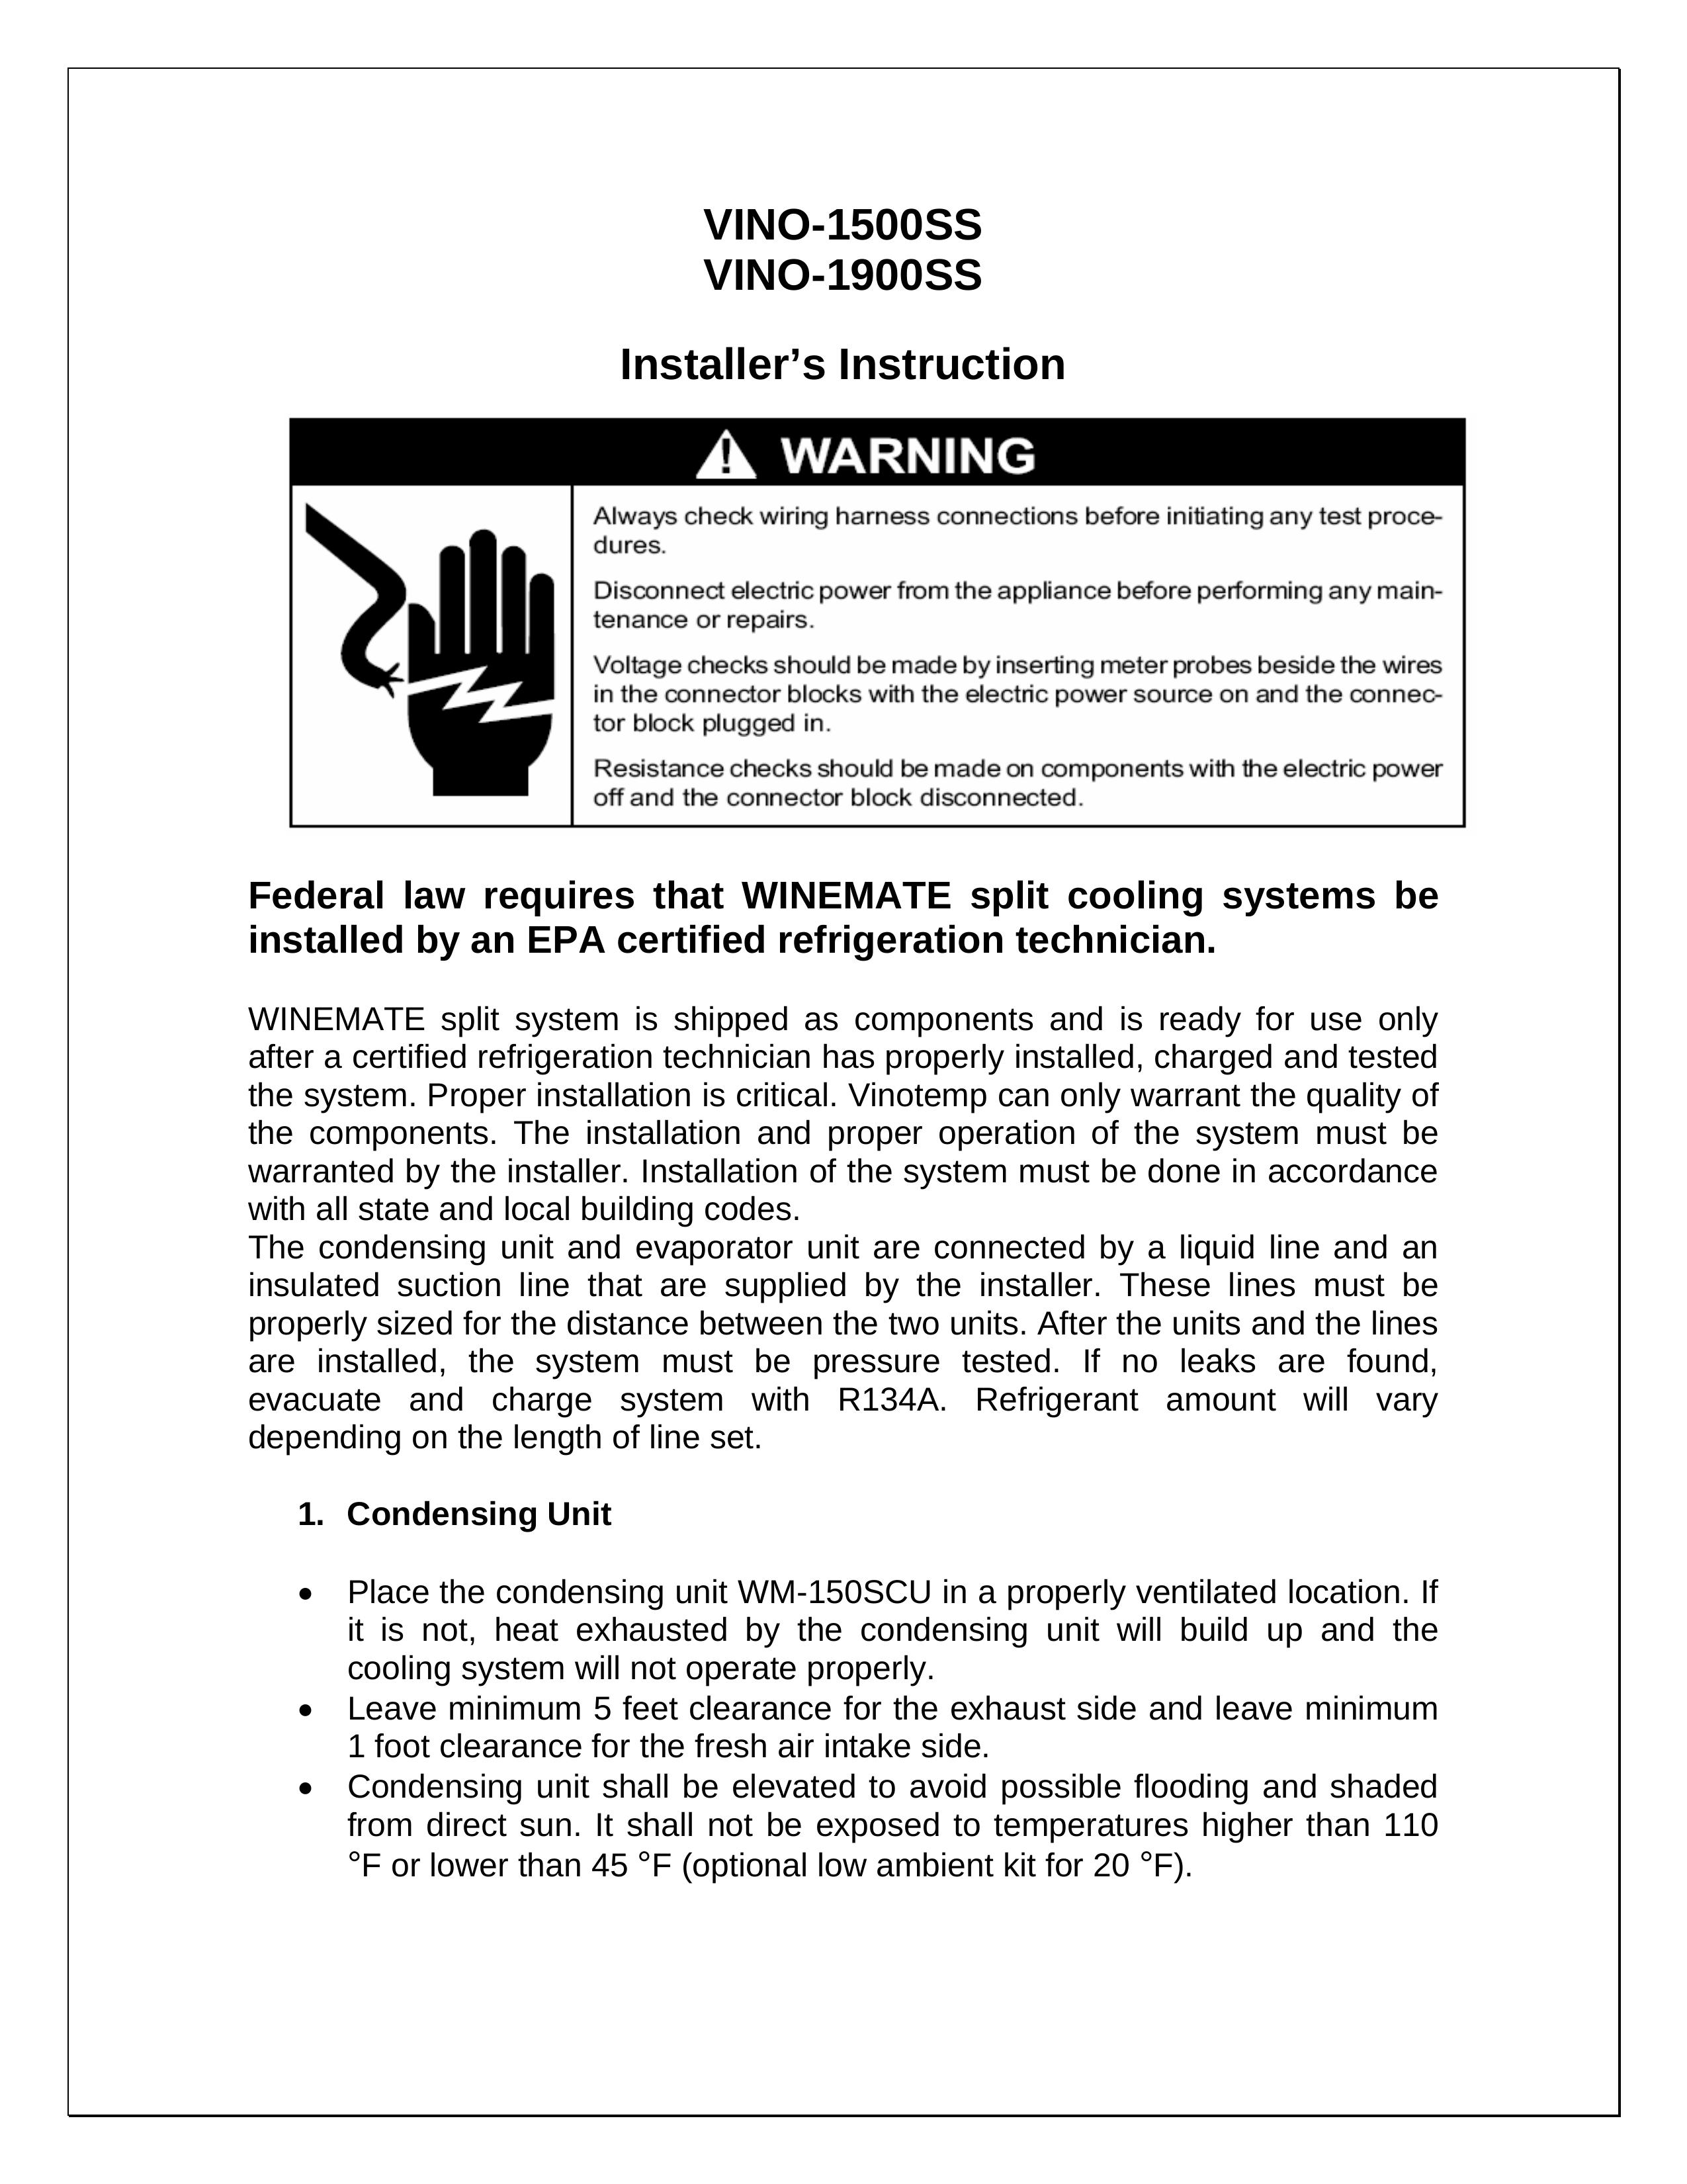 Vinotemp VINO-1900SS Refrigerator User Manual